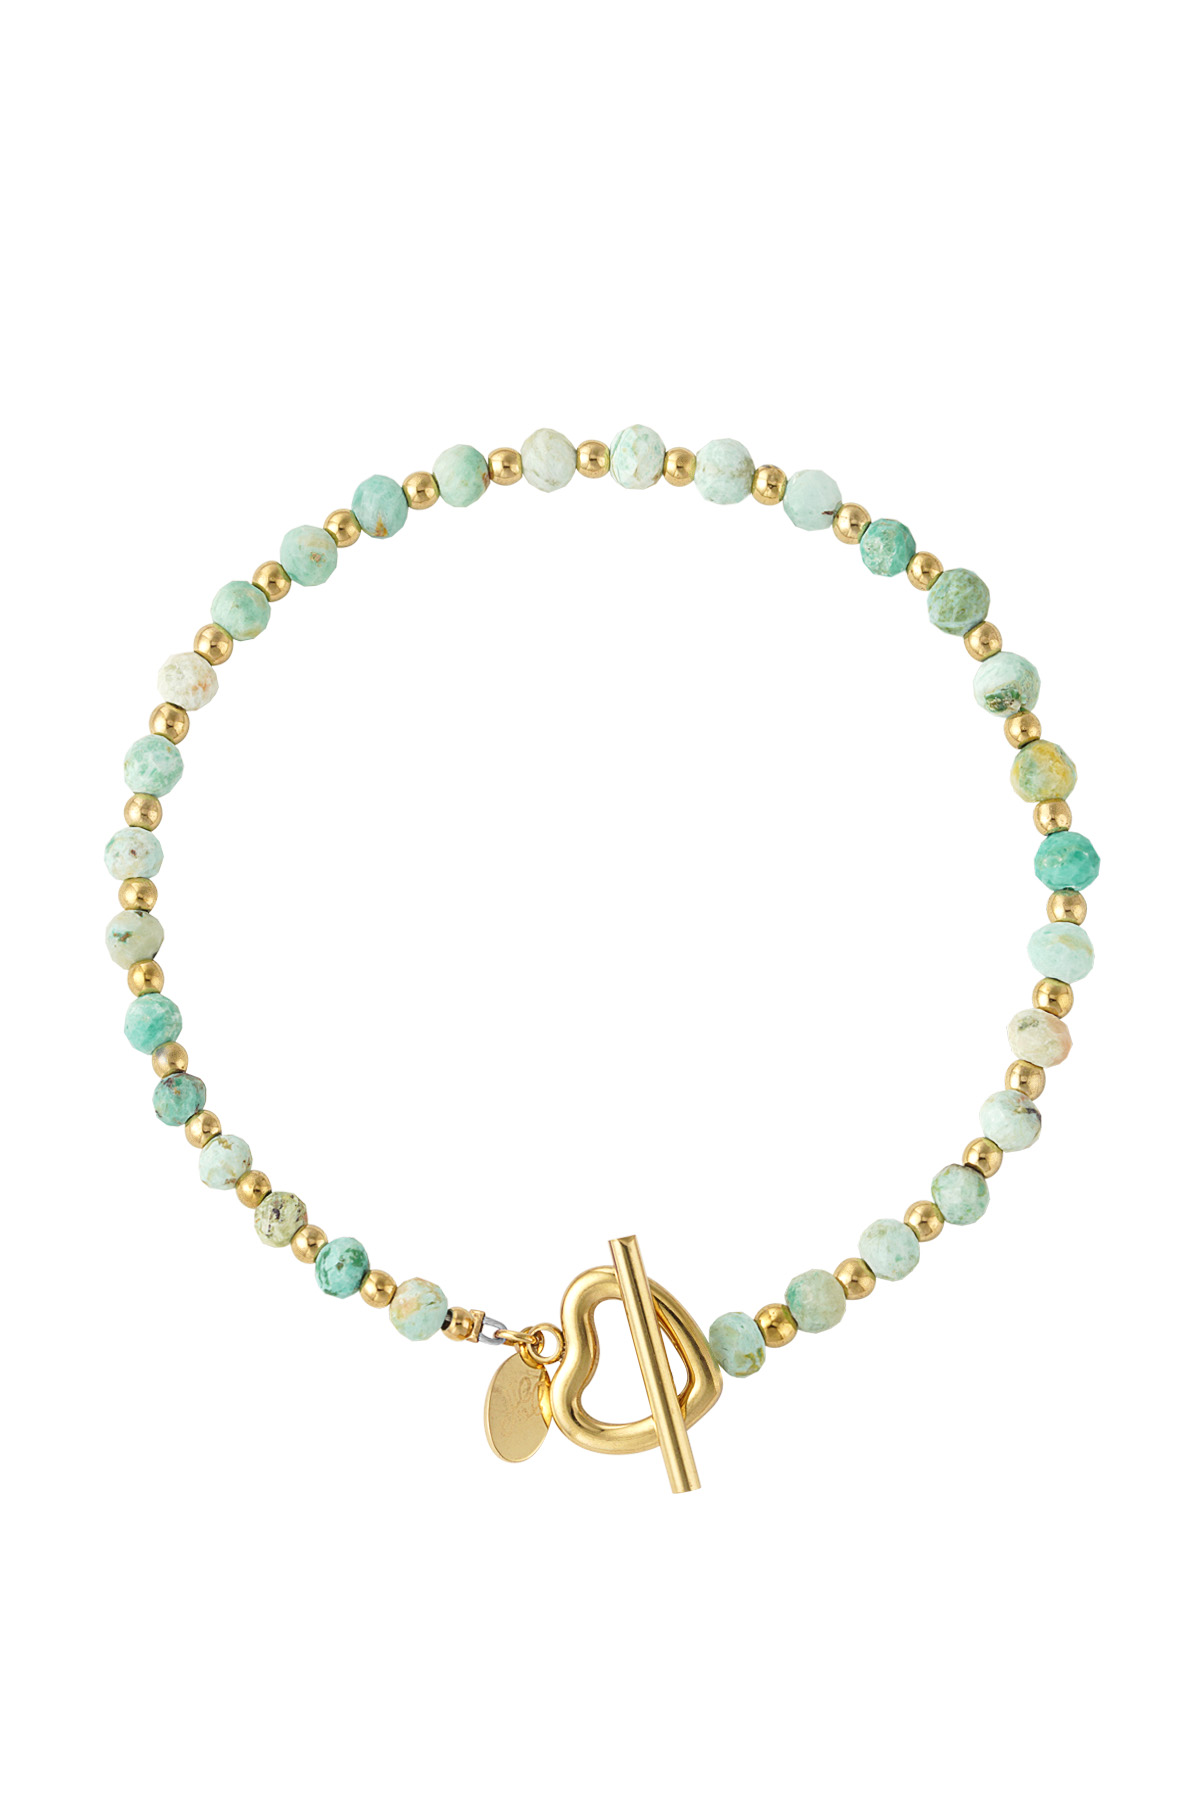 Beaded bracelet heart lock - turquoise/gold Stainless Steel